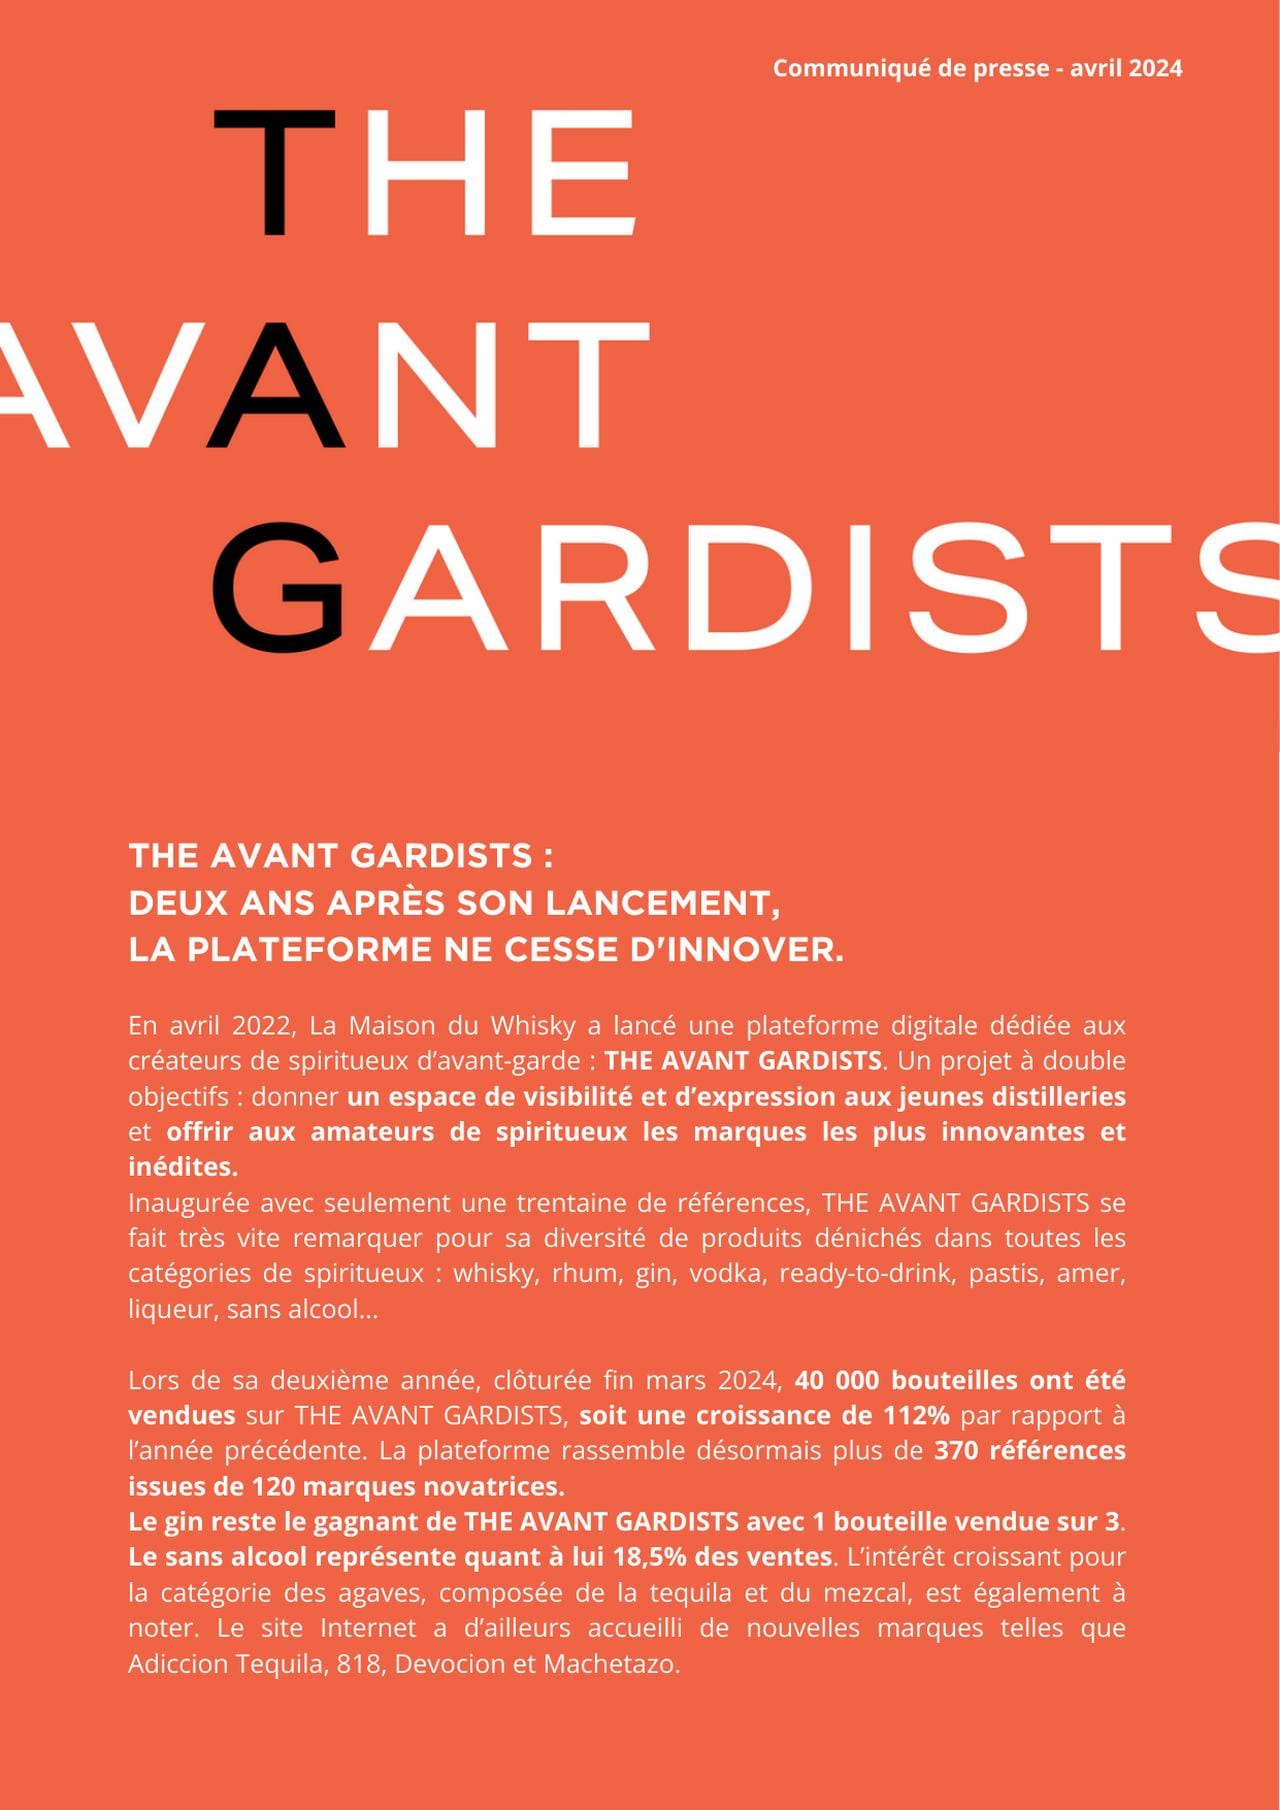 The Avant Gardists : deux ans après son lancement, la plateforme ne cesse d'innover.